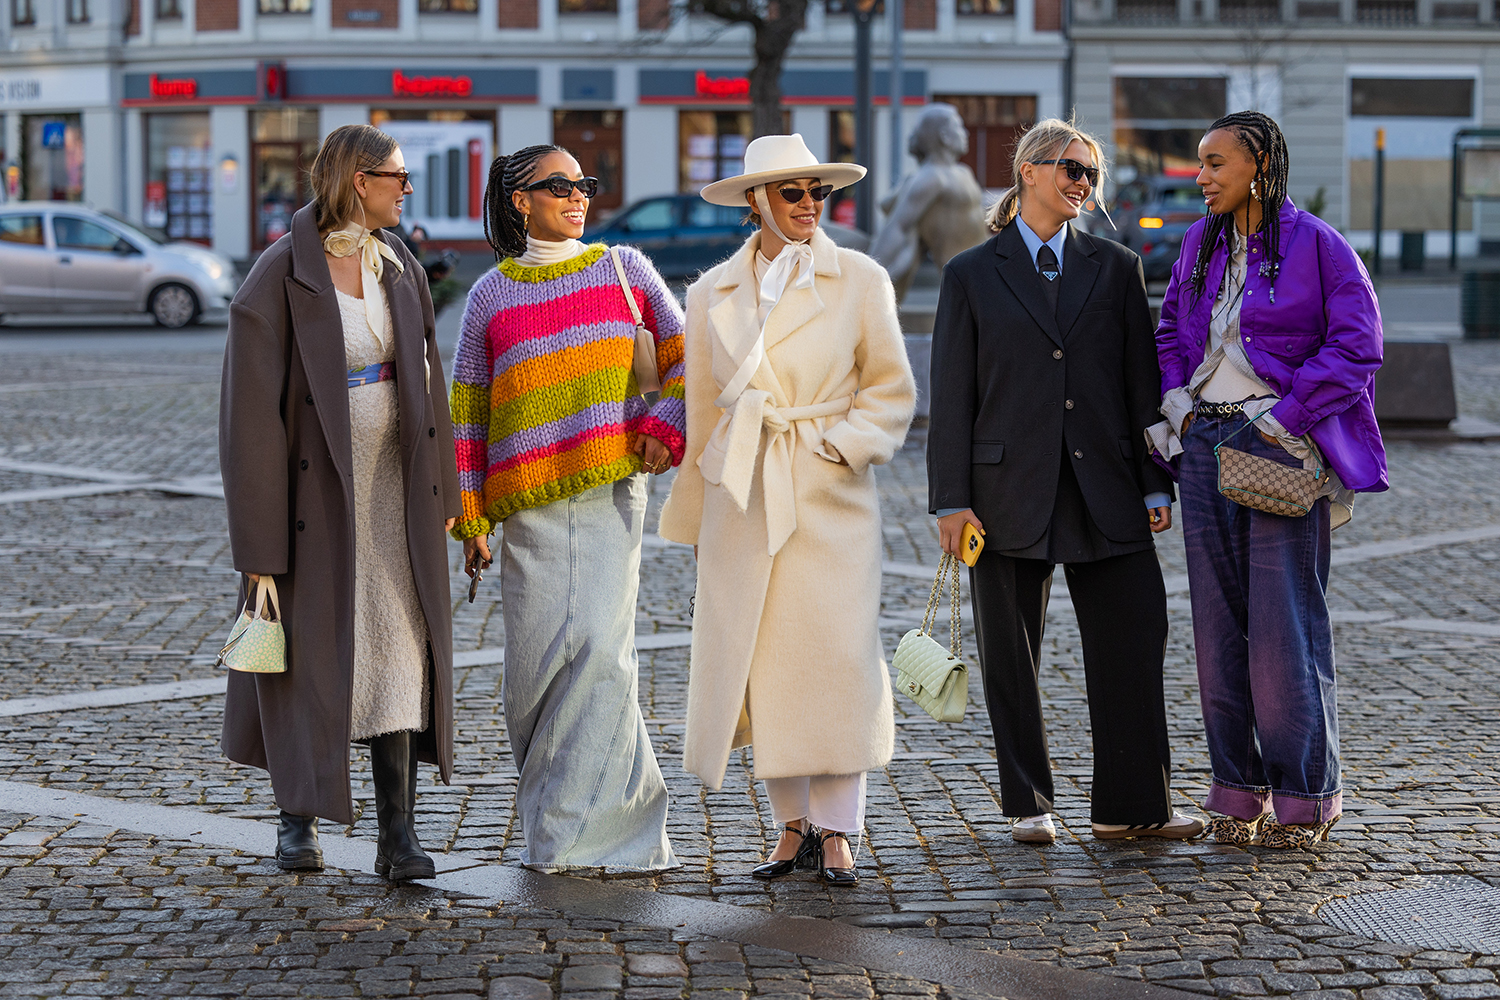 Best Street Style From Copenhagen Fashion Week Fall 2019